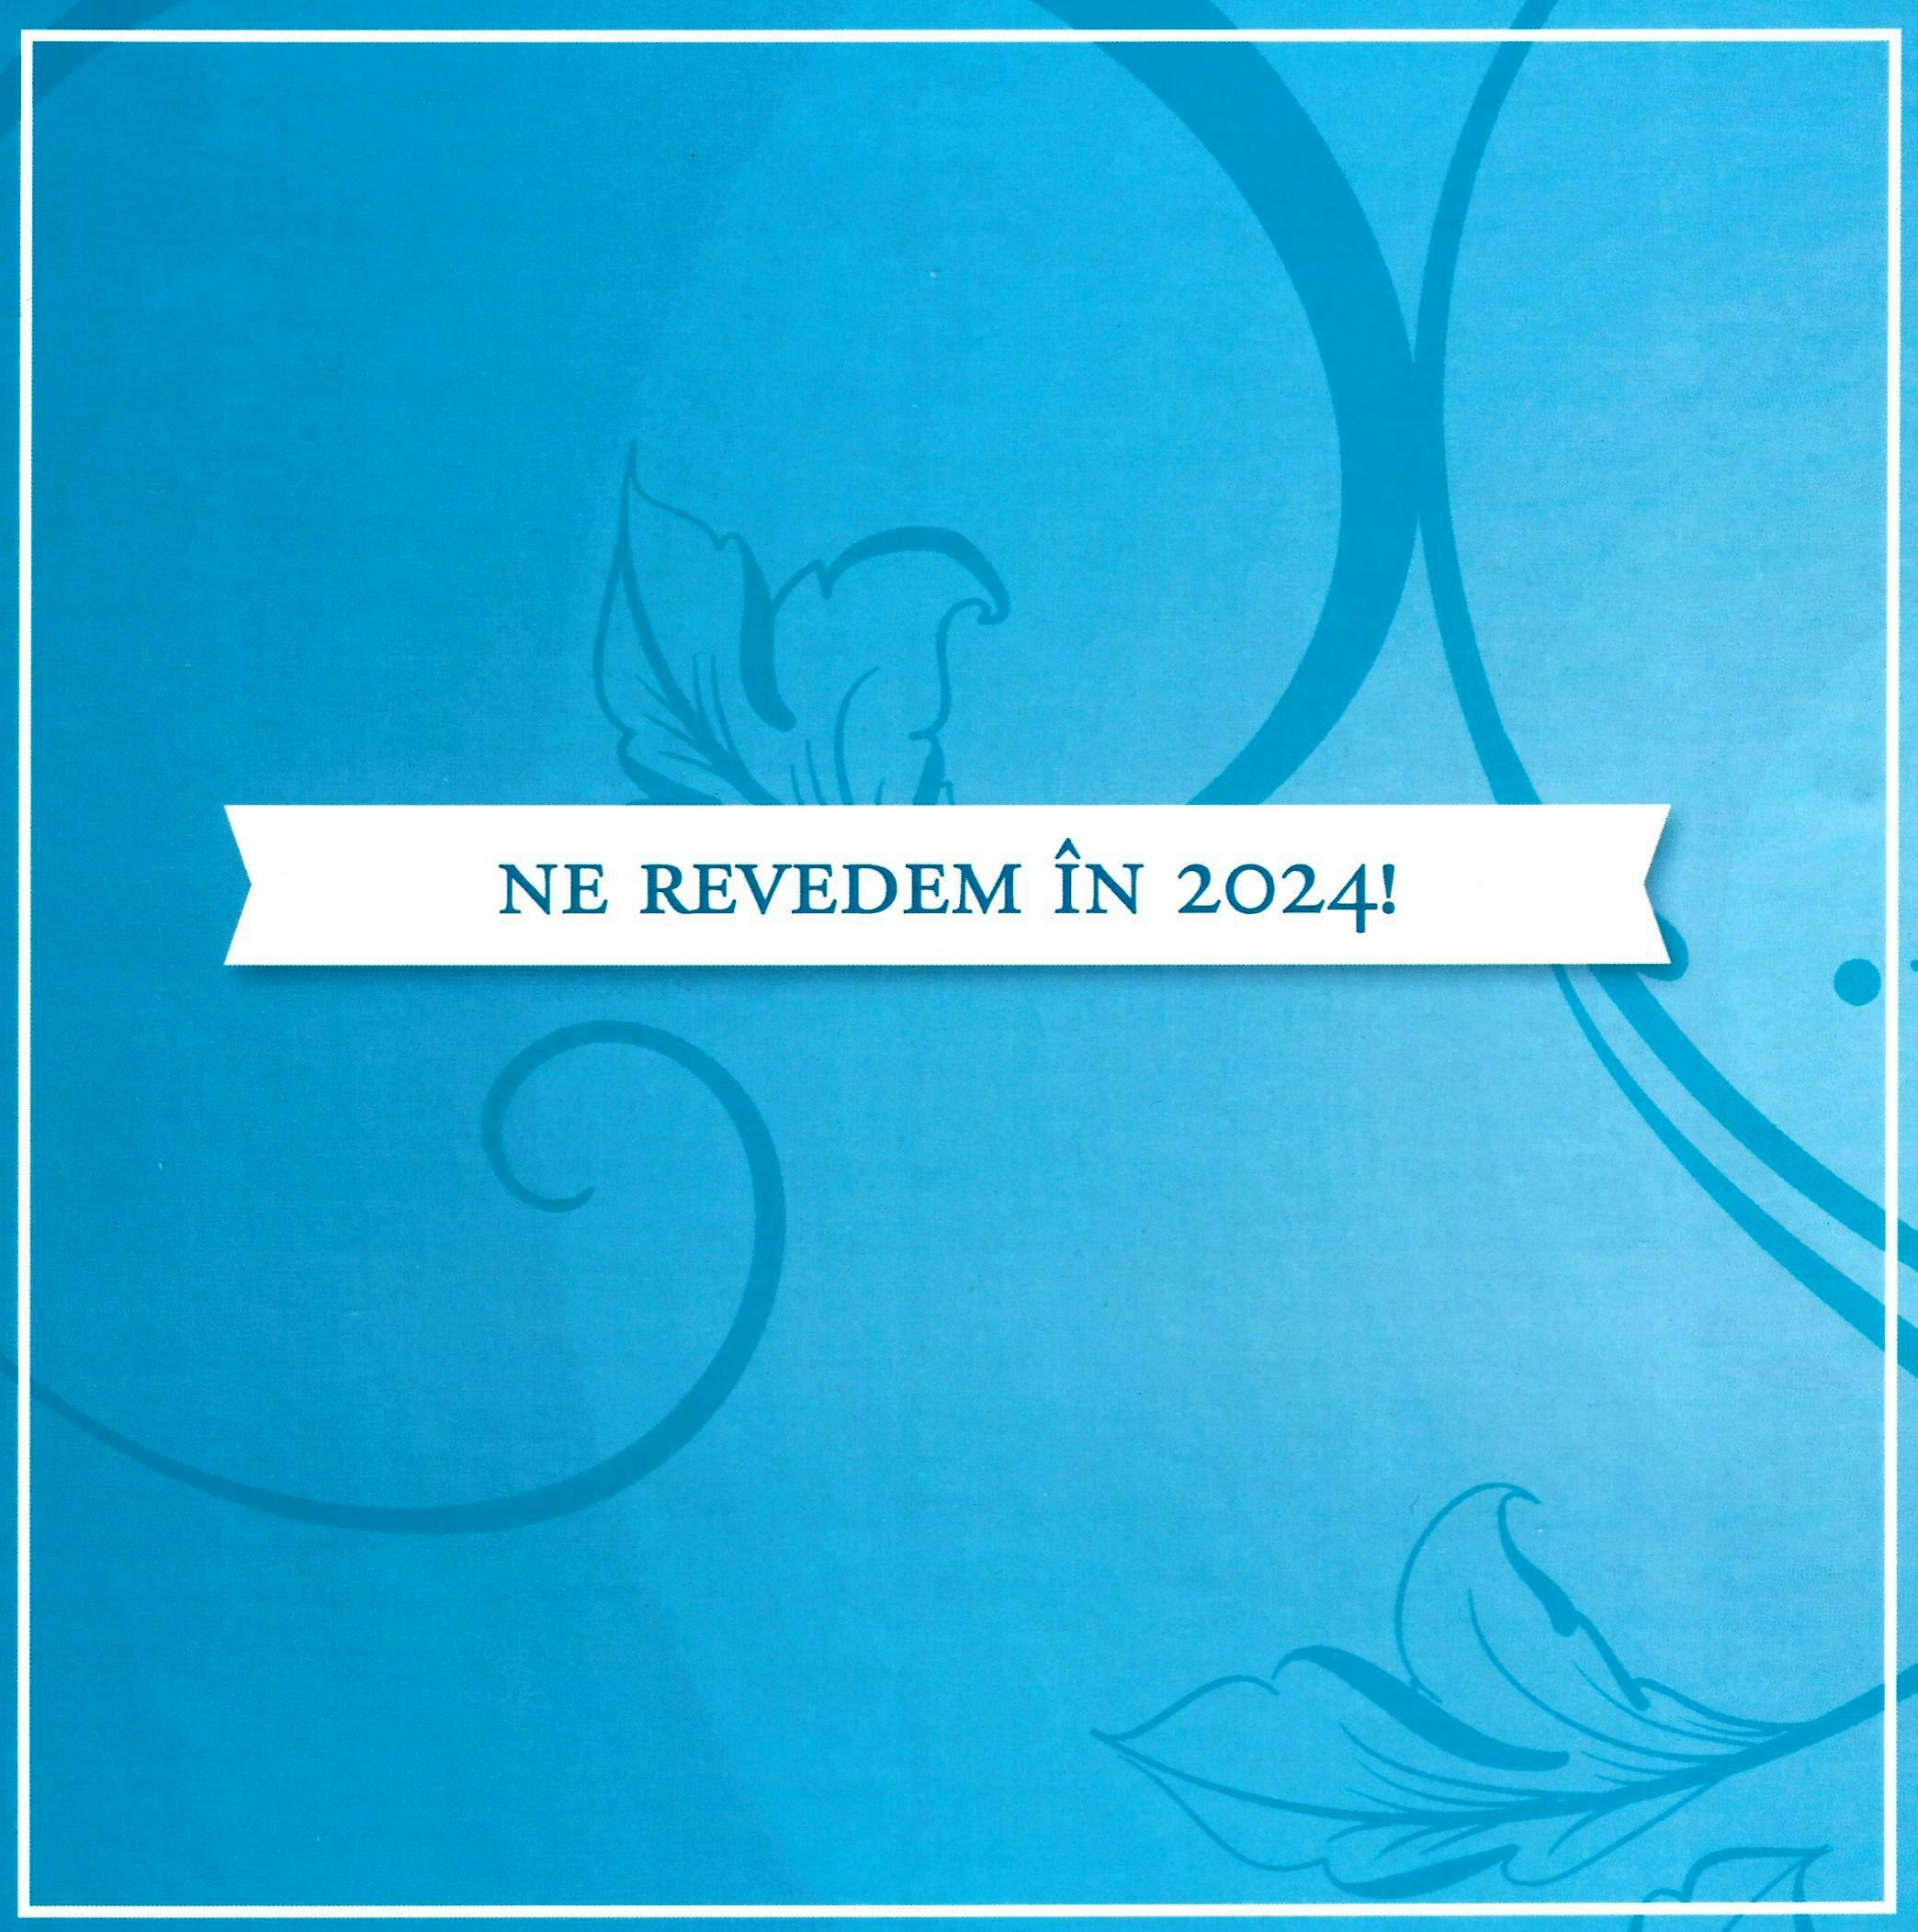 MedicIS94 - Revedere 2024: aconto/persoana, 21 iunie